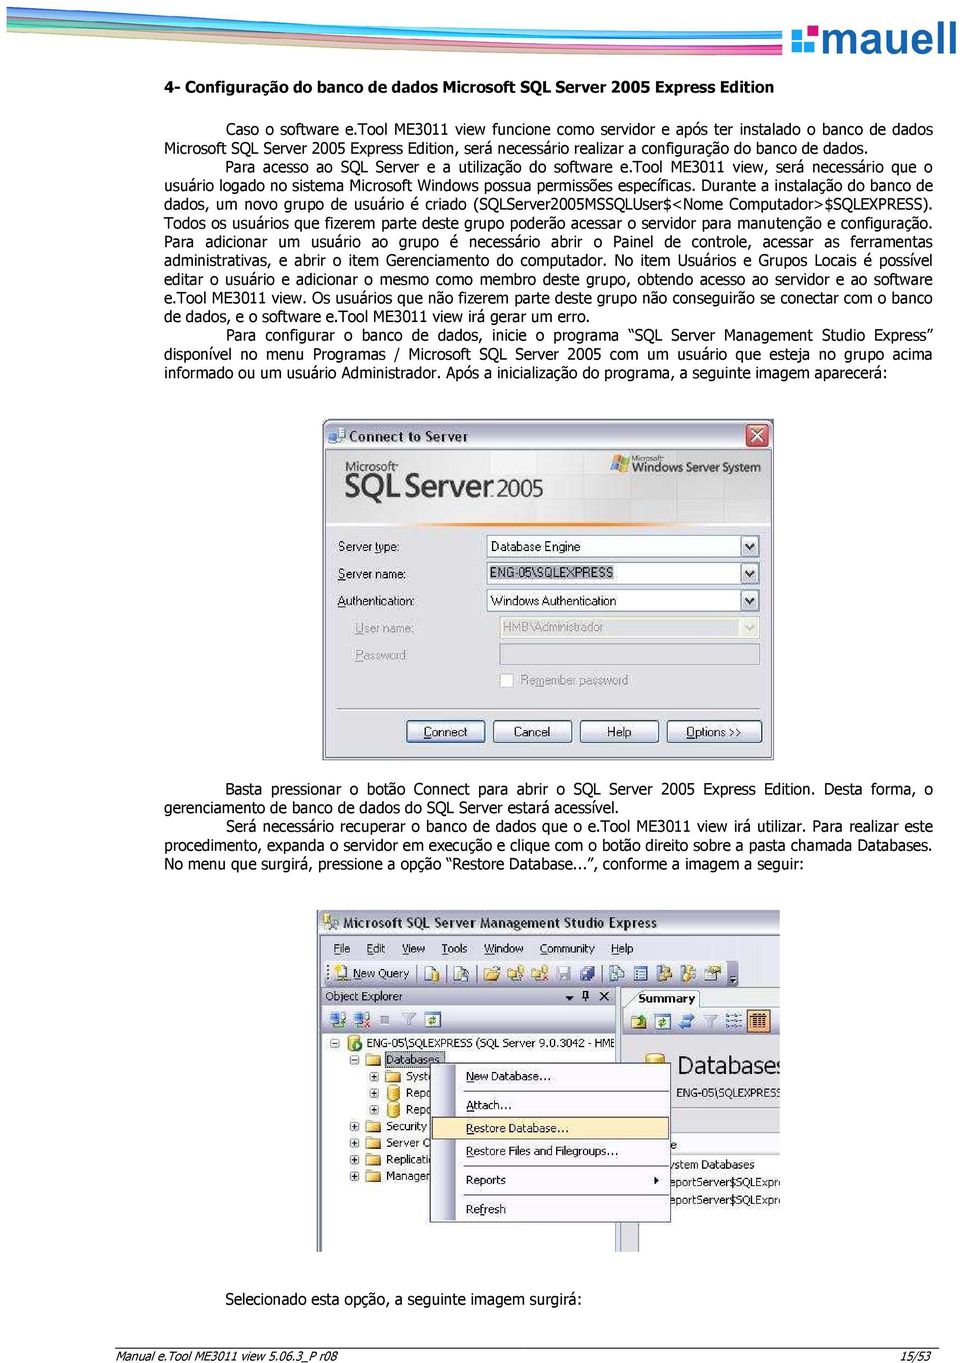 Para acess a SQL Server e a utilizaçã d sftware e.tl ME3011 view, será necessári que usuári lgad n sistema Micrsft Windws pssua permissões específicas.